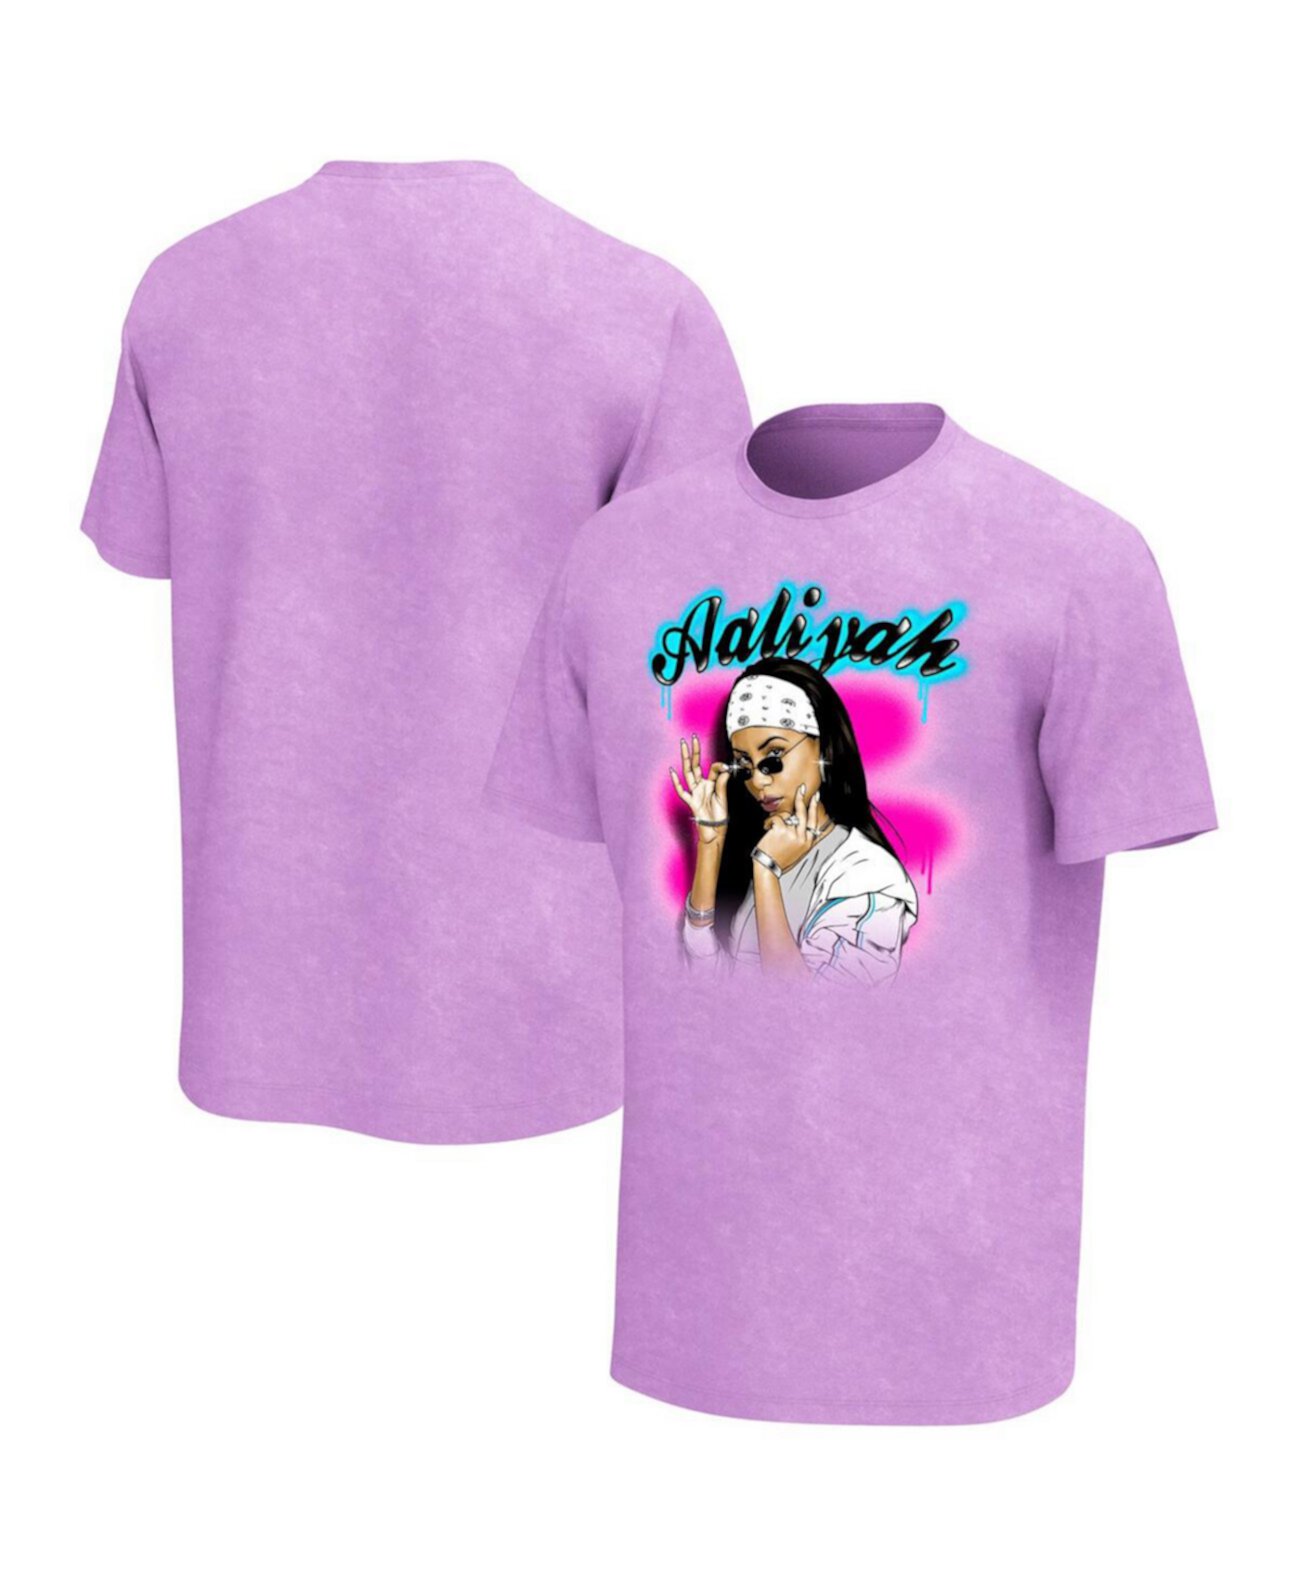 Мужская фиолетовая футболка с графическим рисунком Aaliyah Philcos